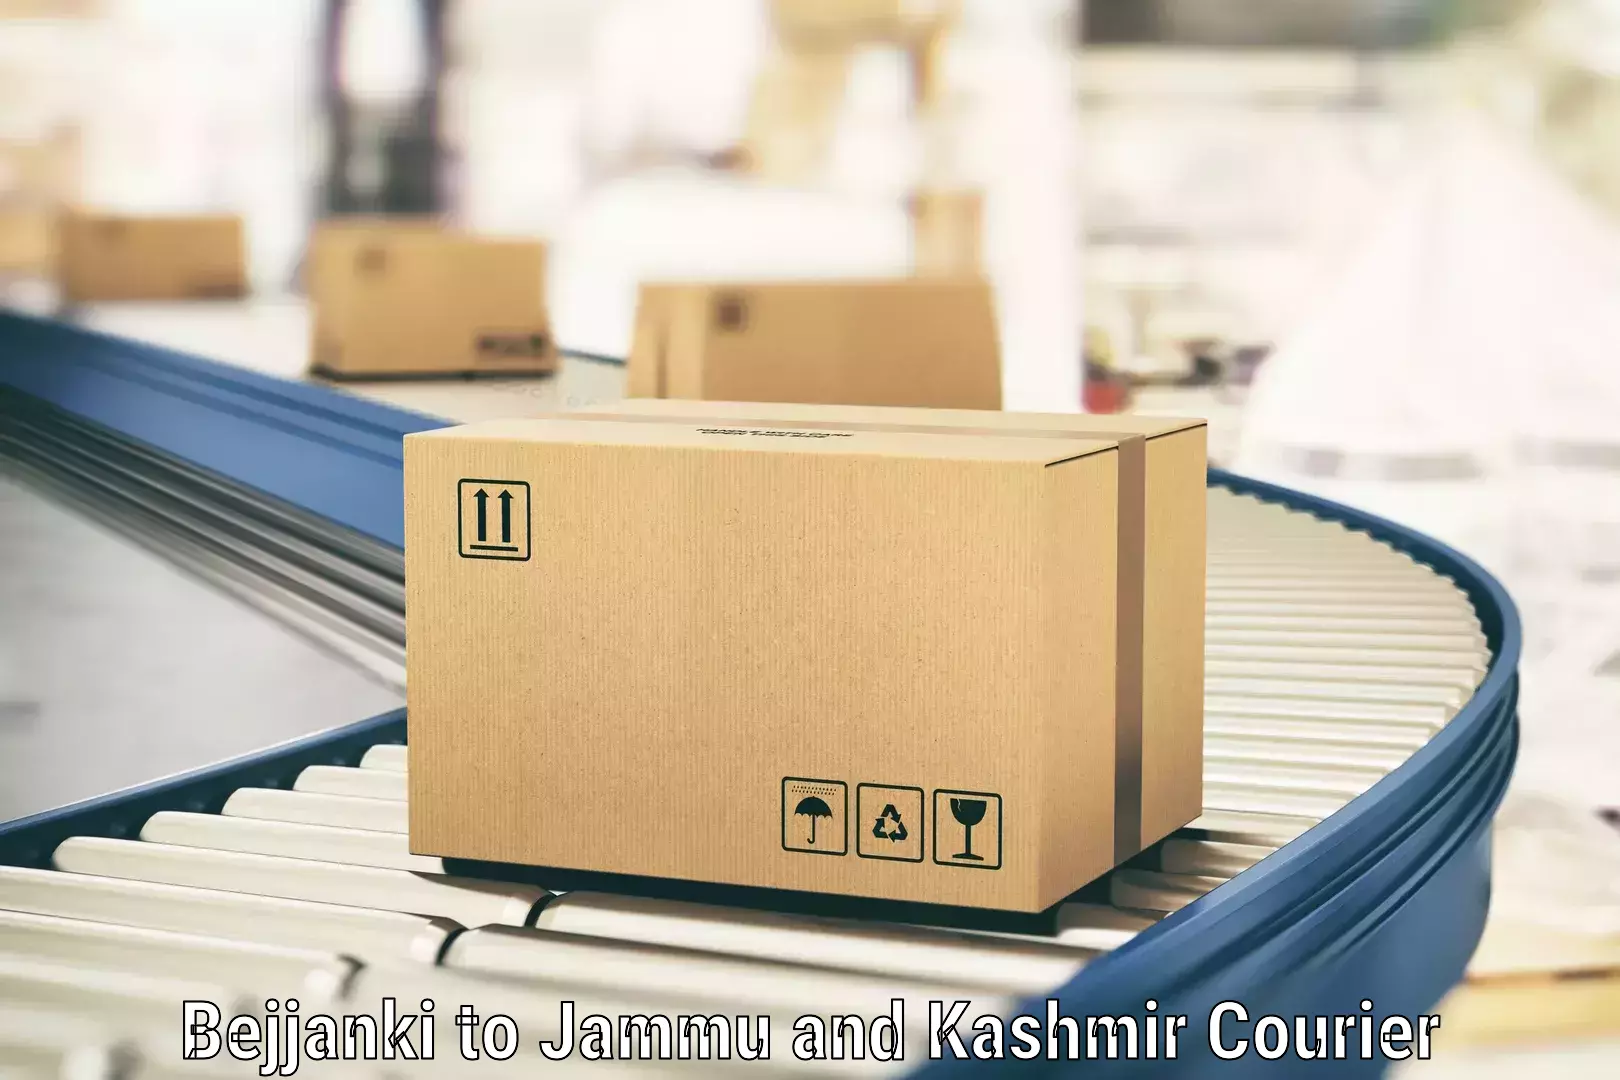 Express shipping Bejjanki to IIT Jammu